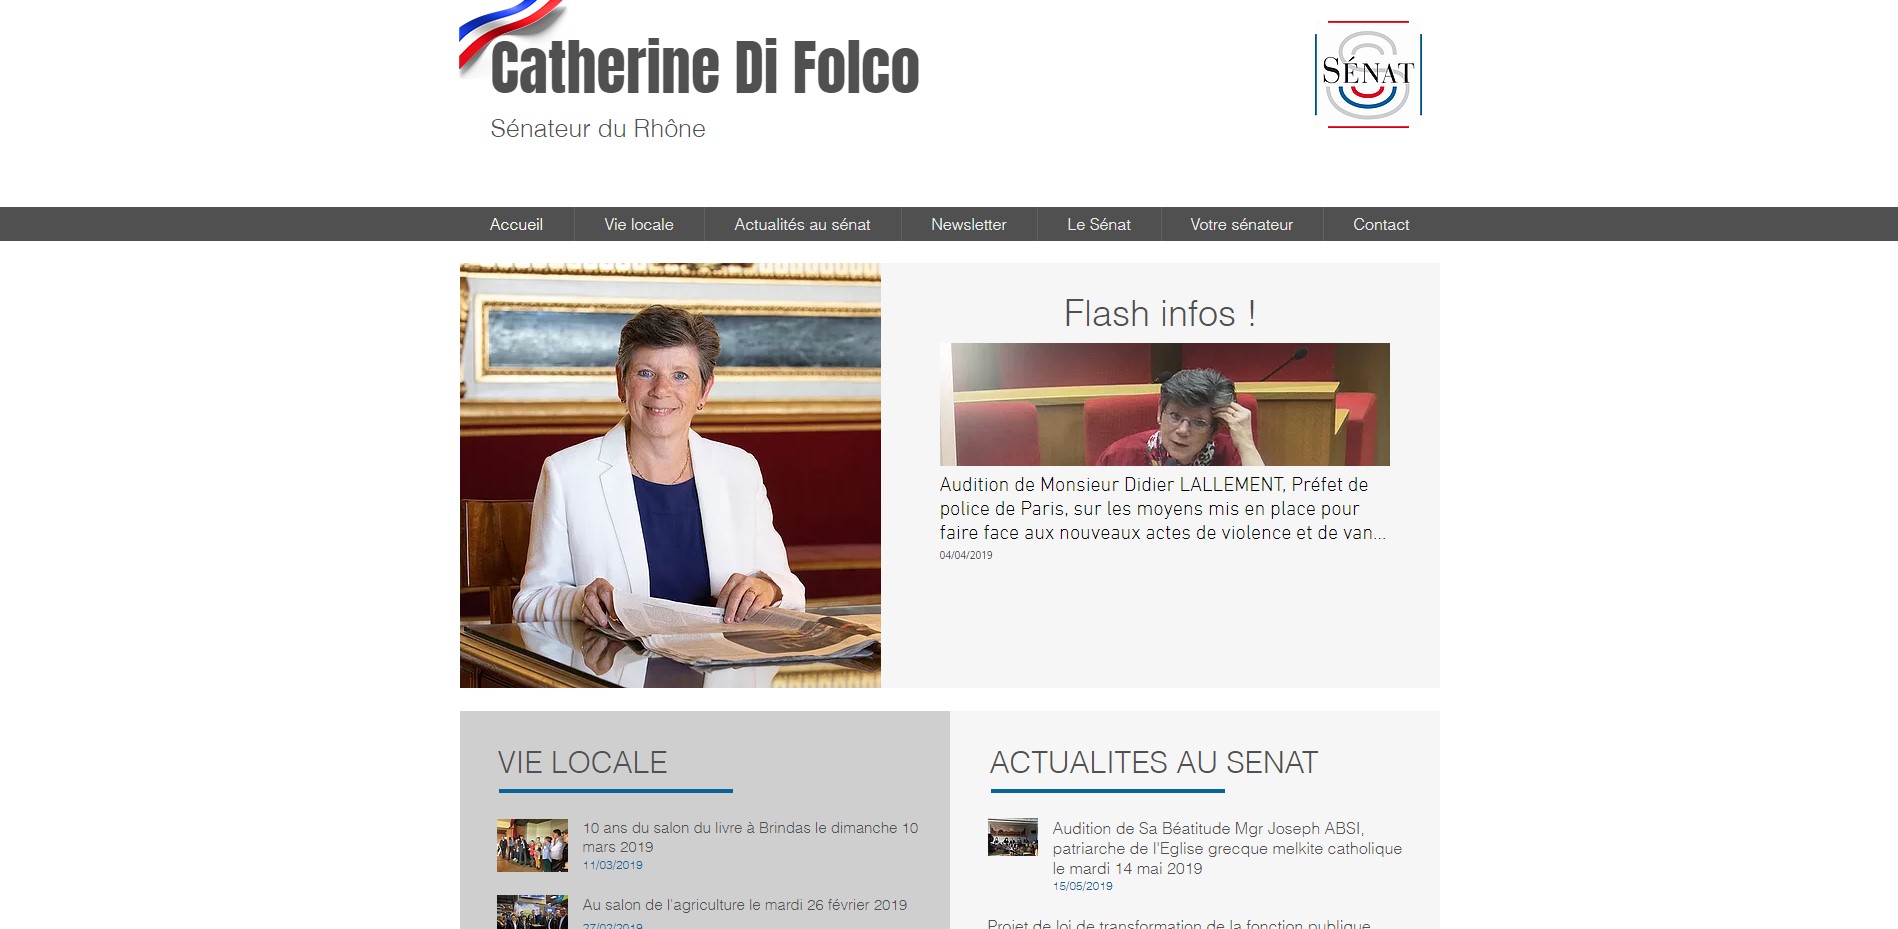 Réalisation RP2I (Romaric Pibolleau): Sénateur Catherine Di Folco - site sous Wix